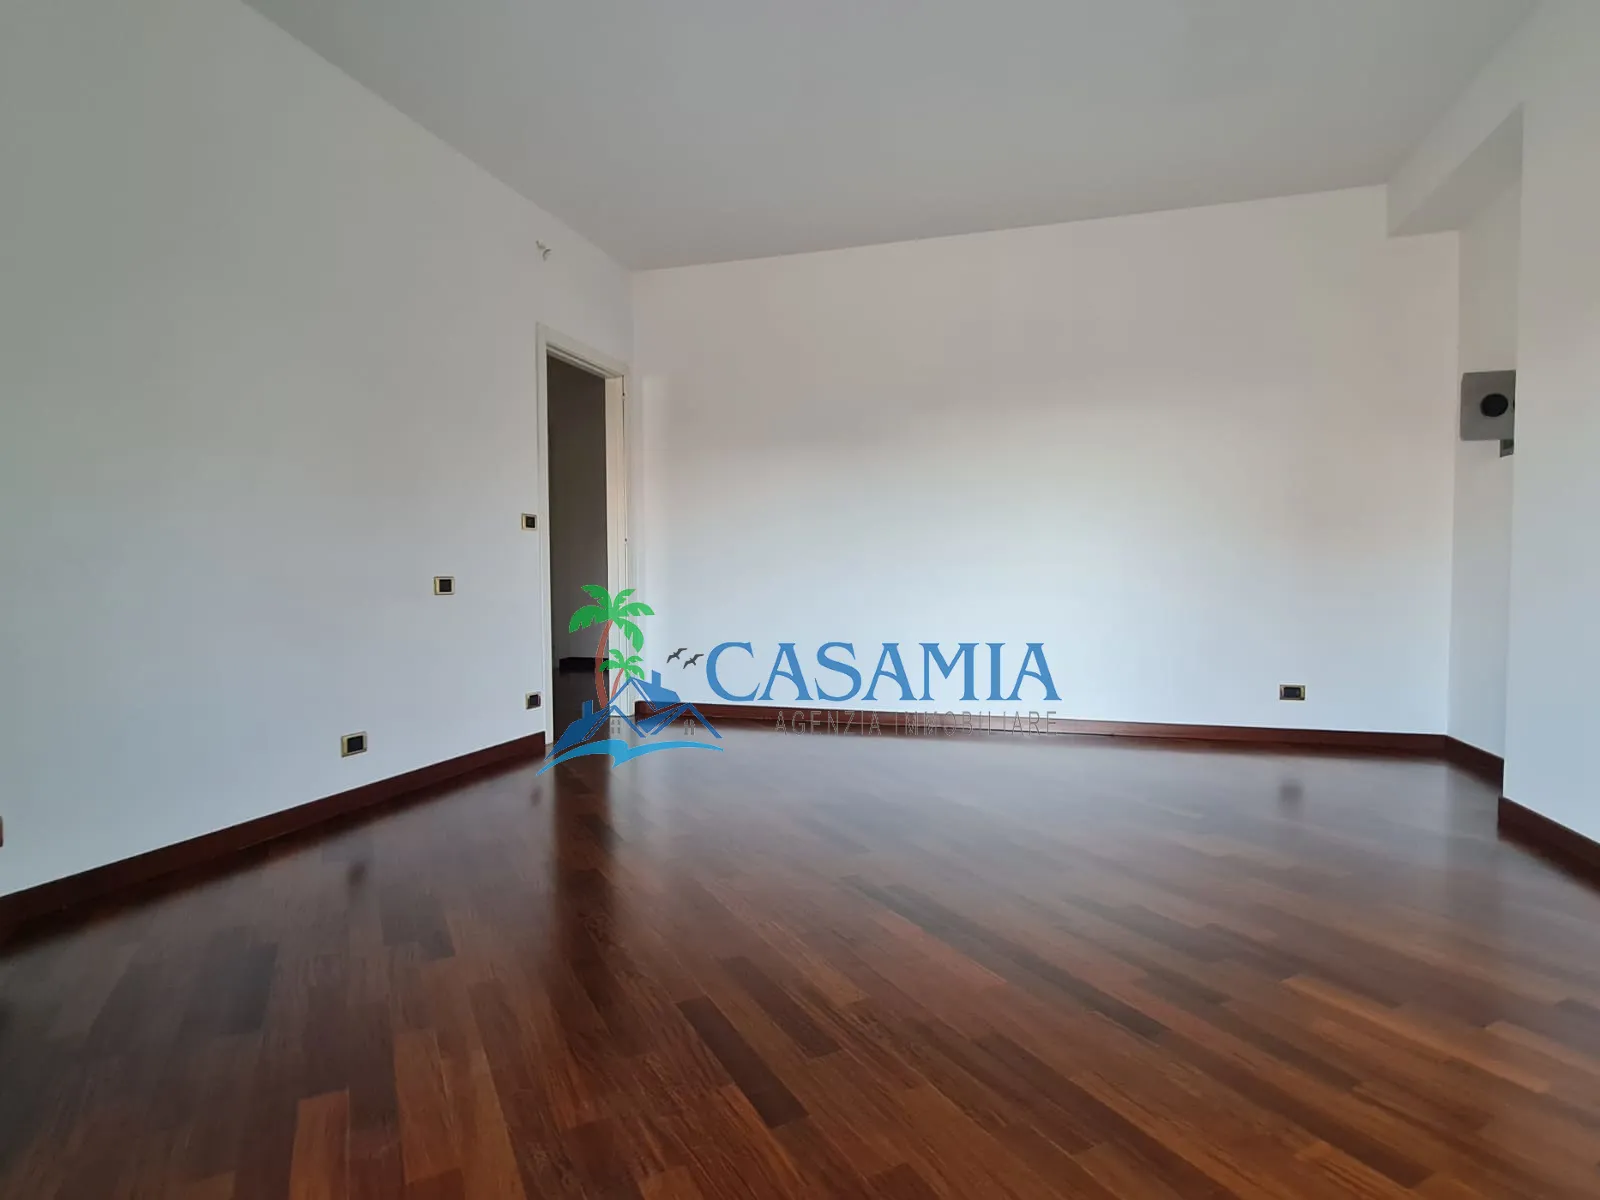 Immagine per Appartamento in vendita a Castel di Lama via Cesare Pavese